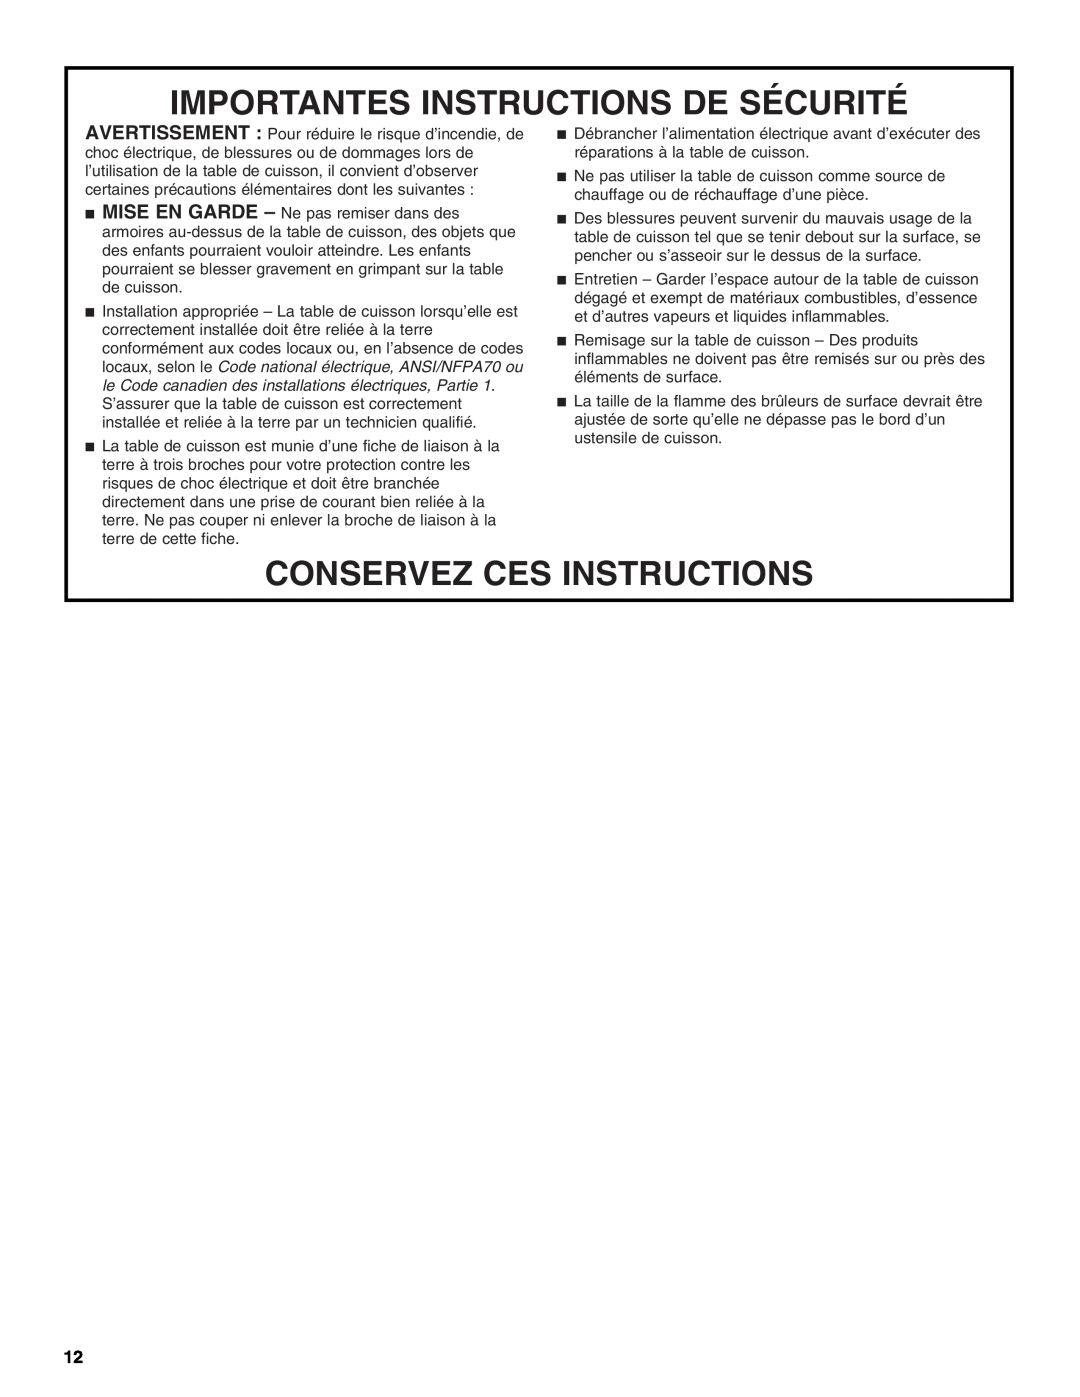 Whirlpool 9761890 manual Importantes Instructions De Sécurité, Conservez Ces Instructions 